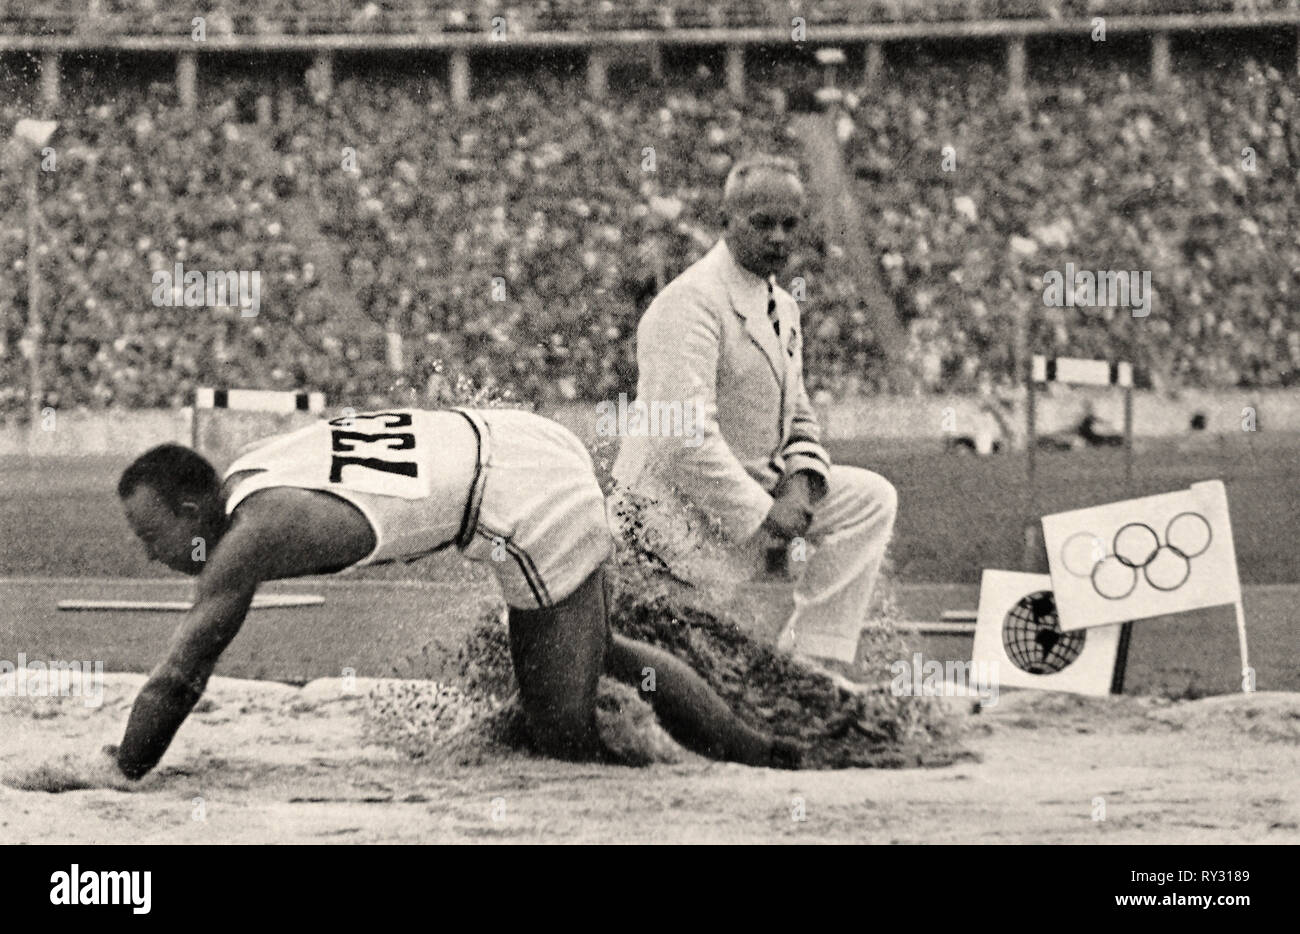 Olympischen Spielen 1936 Berlin - Jesse Owens in seinem Rekord im Weitsprung mit 8,06 Meter Gold bei den Olympischen Spielen 1936 in Berlin dauert Stockfoto